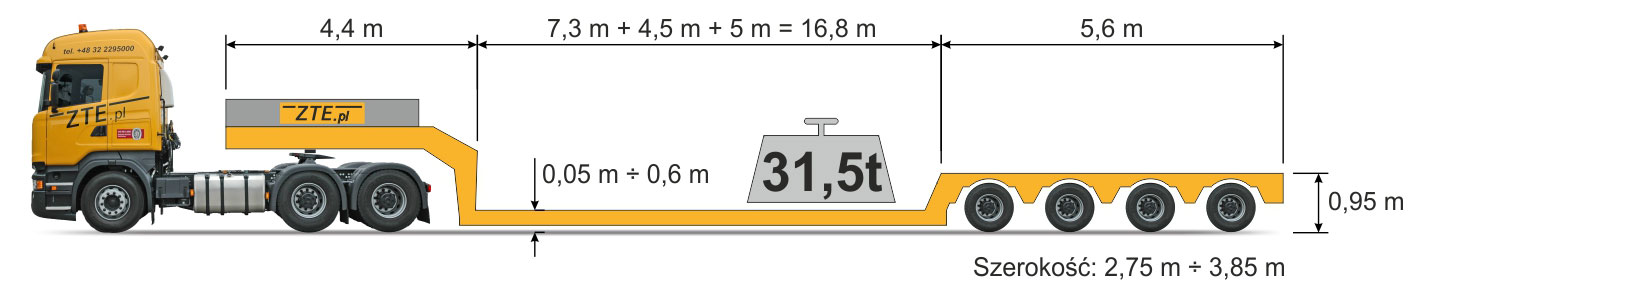 Naczepa typu Kesselbrücke 4-osiowa